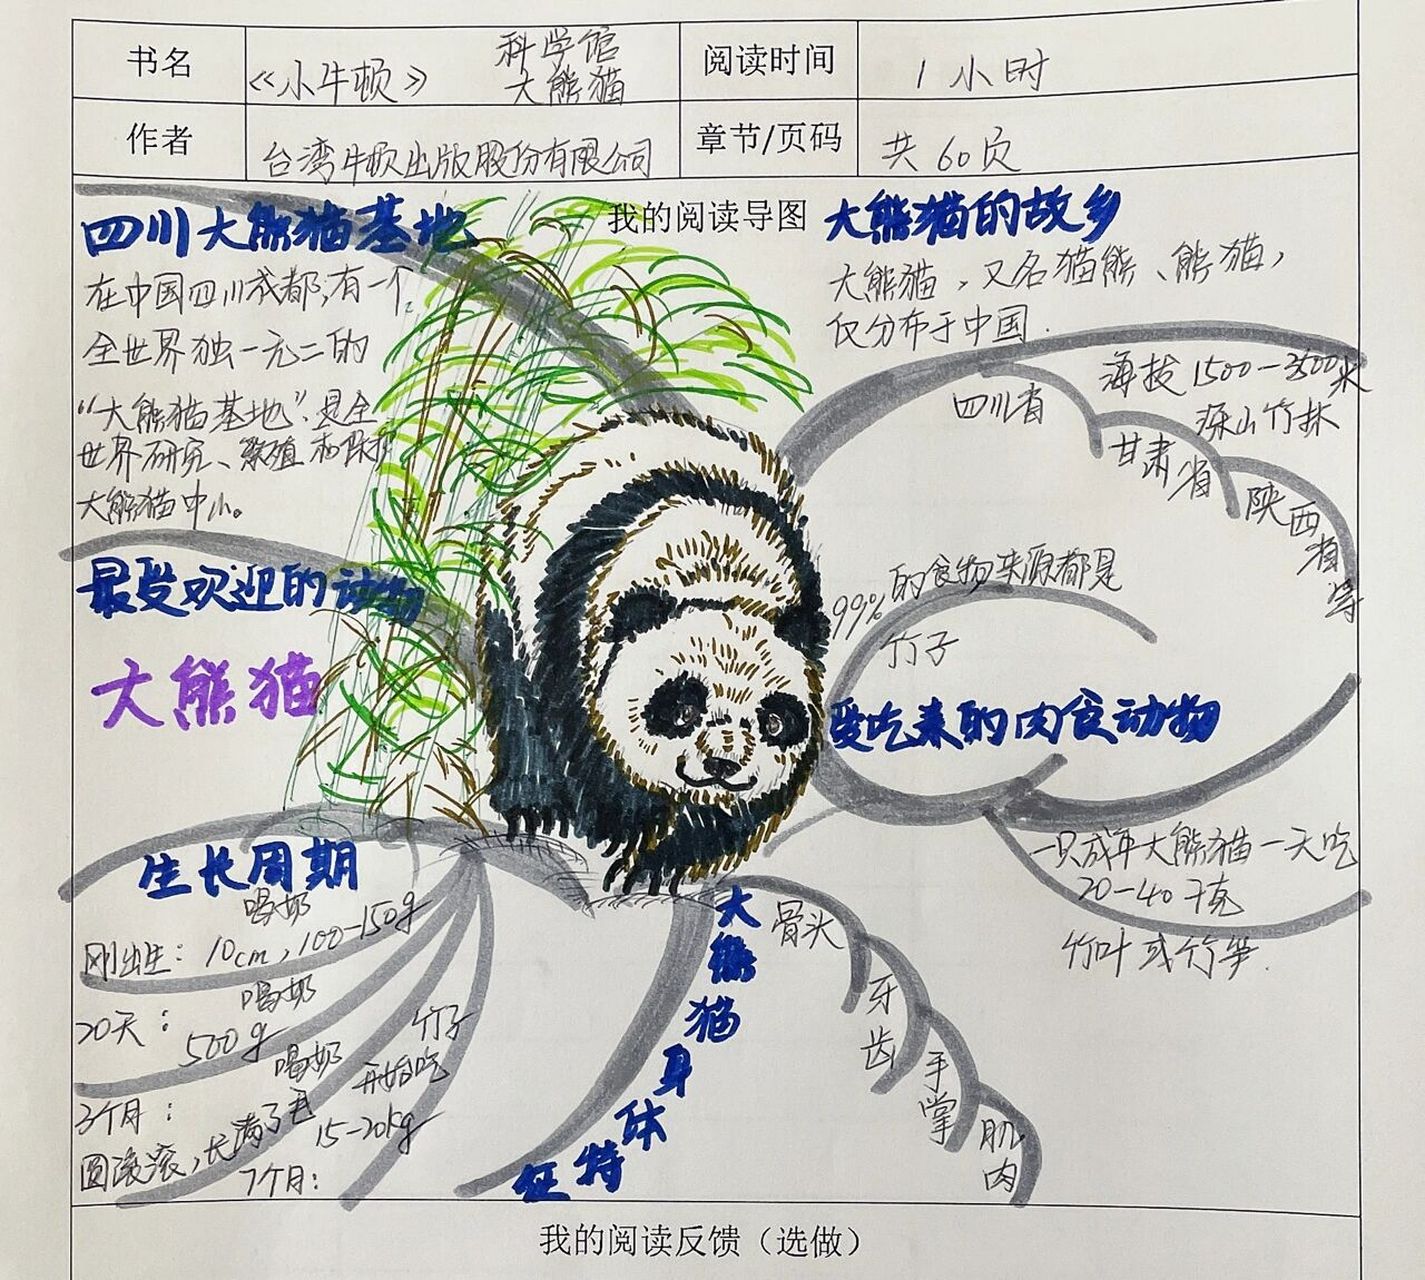 介绍熊猫的思维导图图片